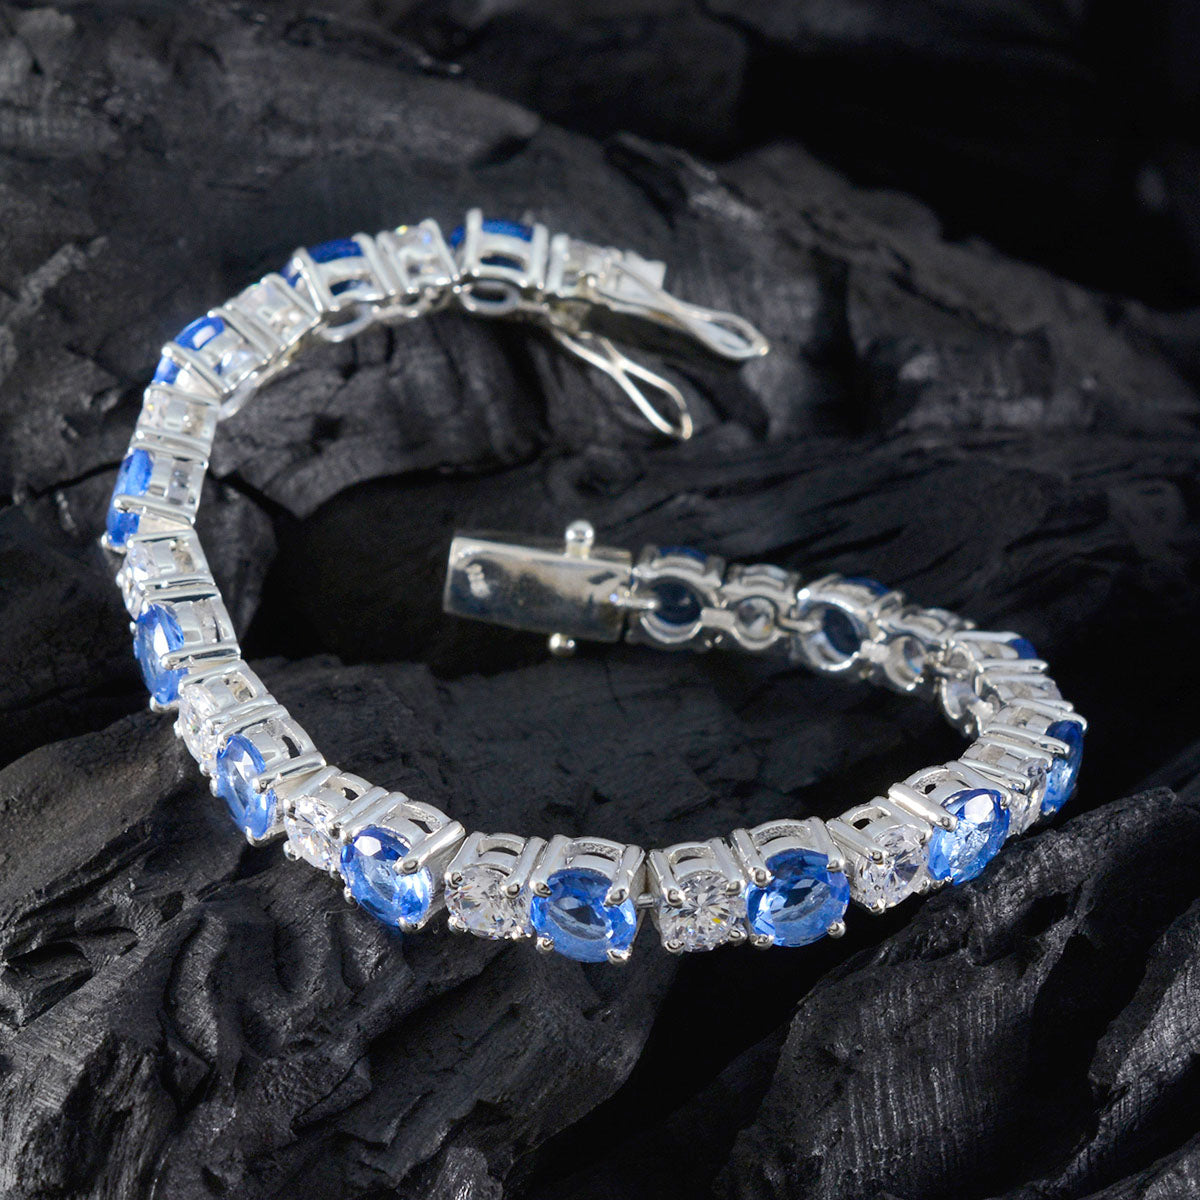 Riyo Suppiler 925 Sterling Silber Armband für Mädchen, blaues Supphire-CZ-Armband mit Krappenfassung und Box mit Zungen-Tennis-Armband.